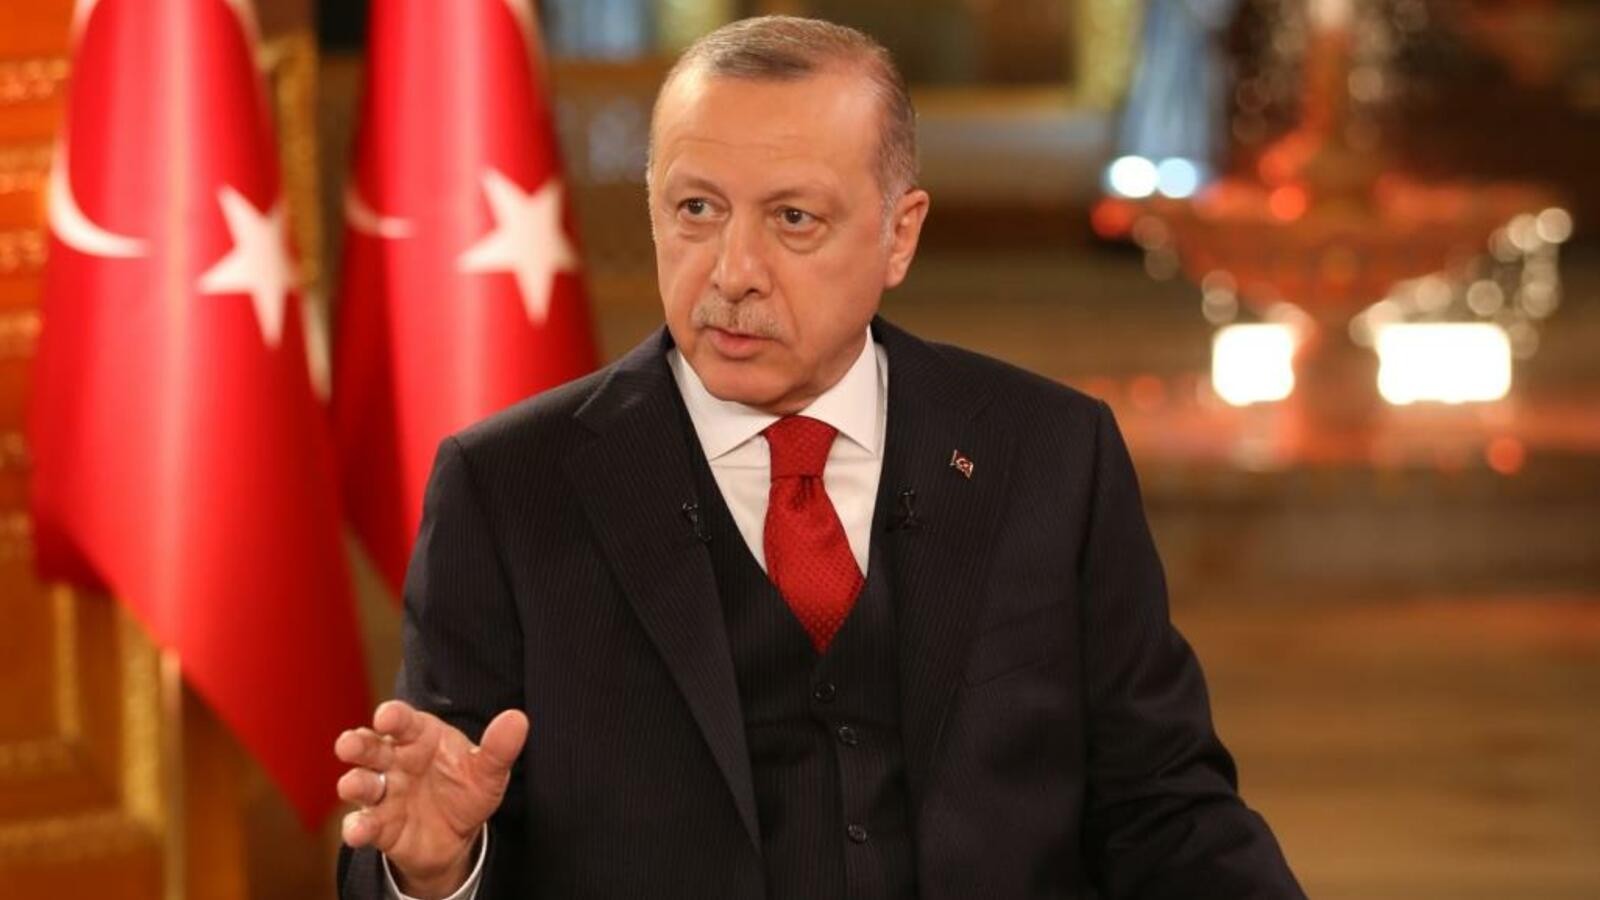 الرئيس أردوغان ينقل ثلاثة بشارات للشعب التركي واحدة حصلت واثنتان مفاجـ.ـأة